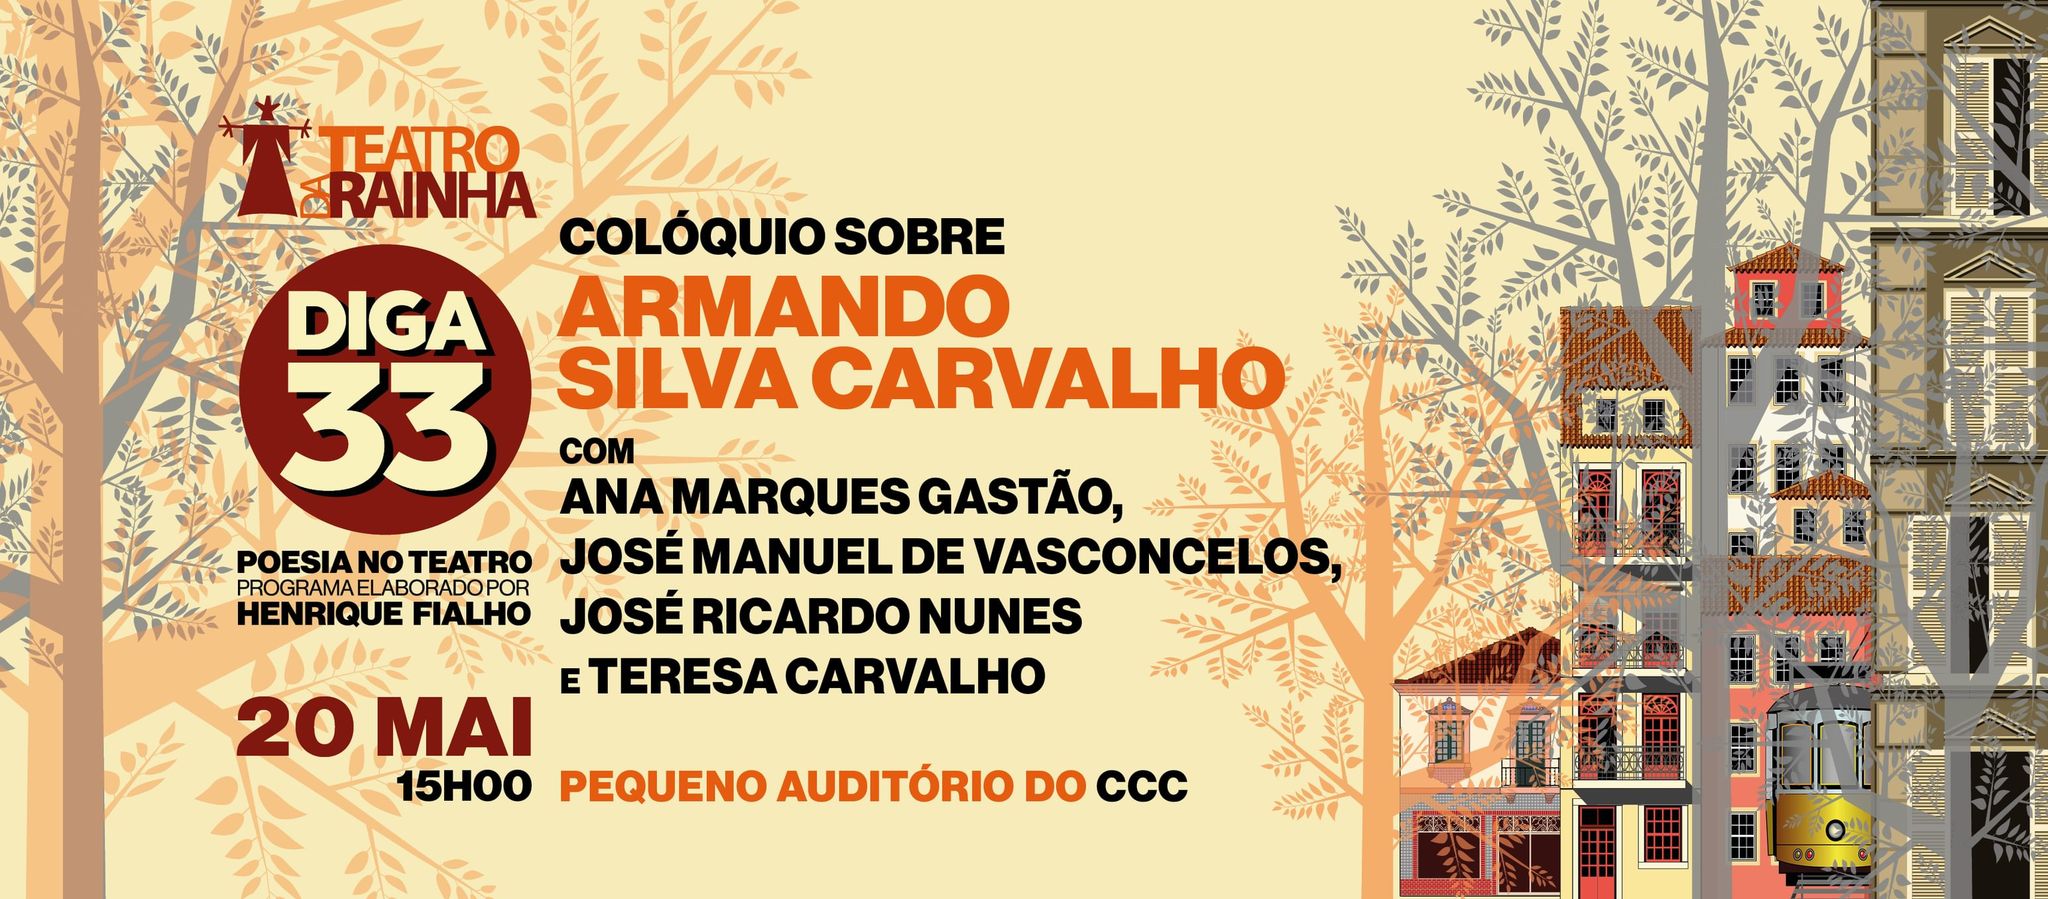 Diga 33 - Poesia no Teatro | Colóquio sobre Armando Silva Carvalho